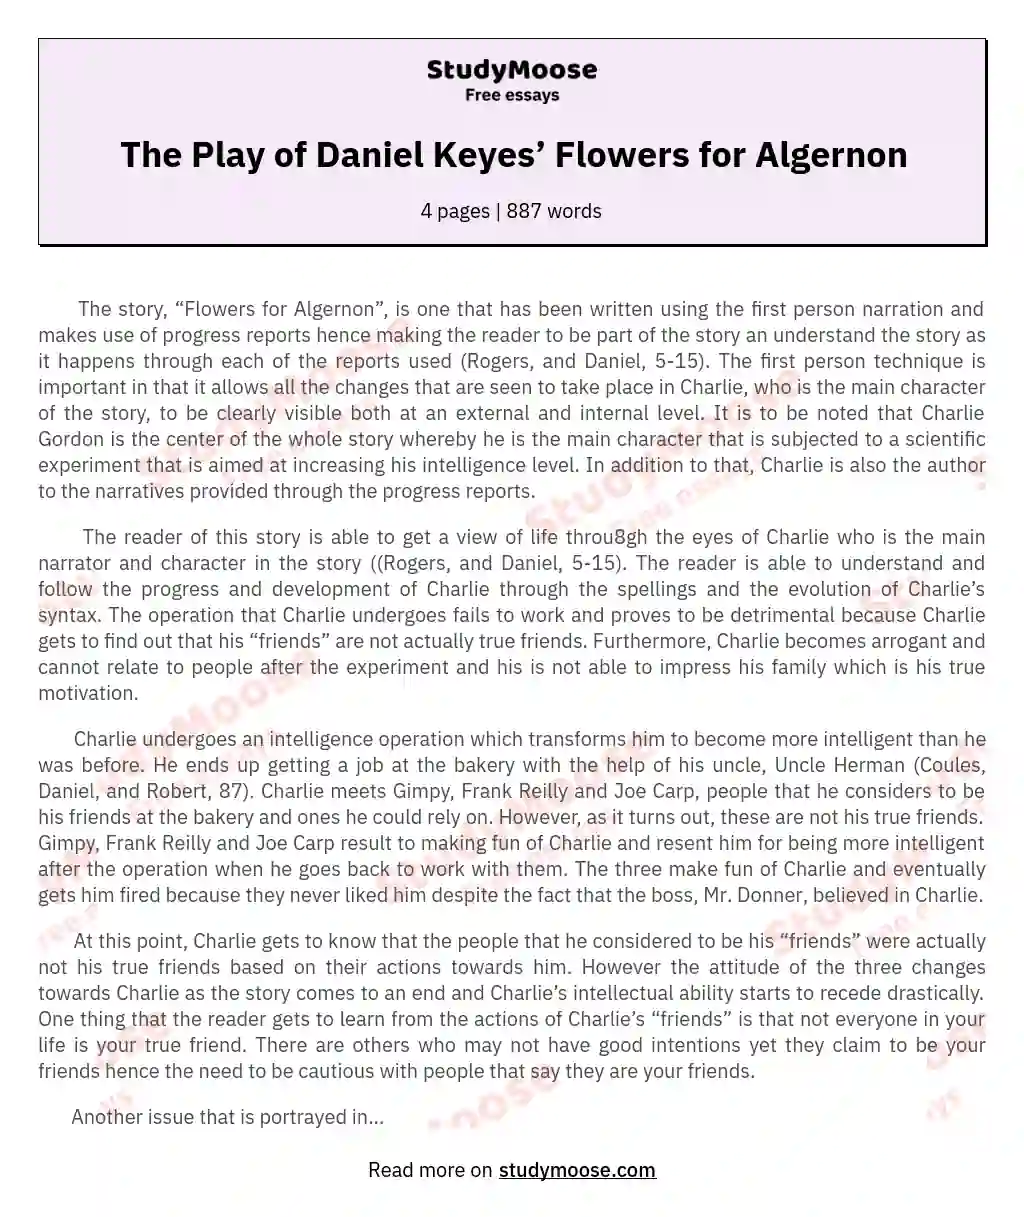 The Play of Daniel Keyes’ Flowers for Algernon